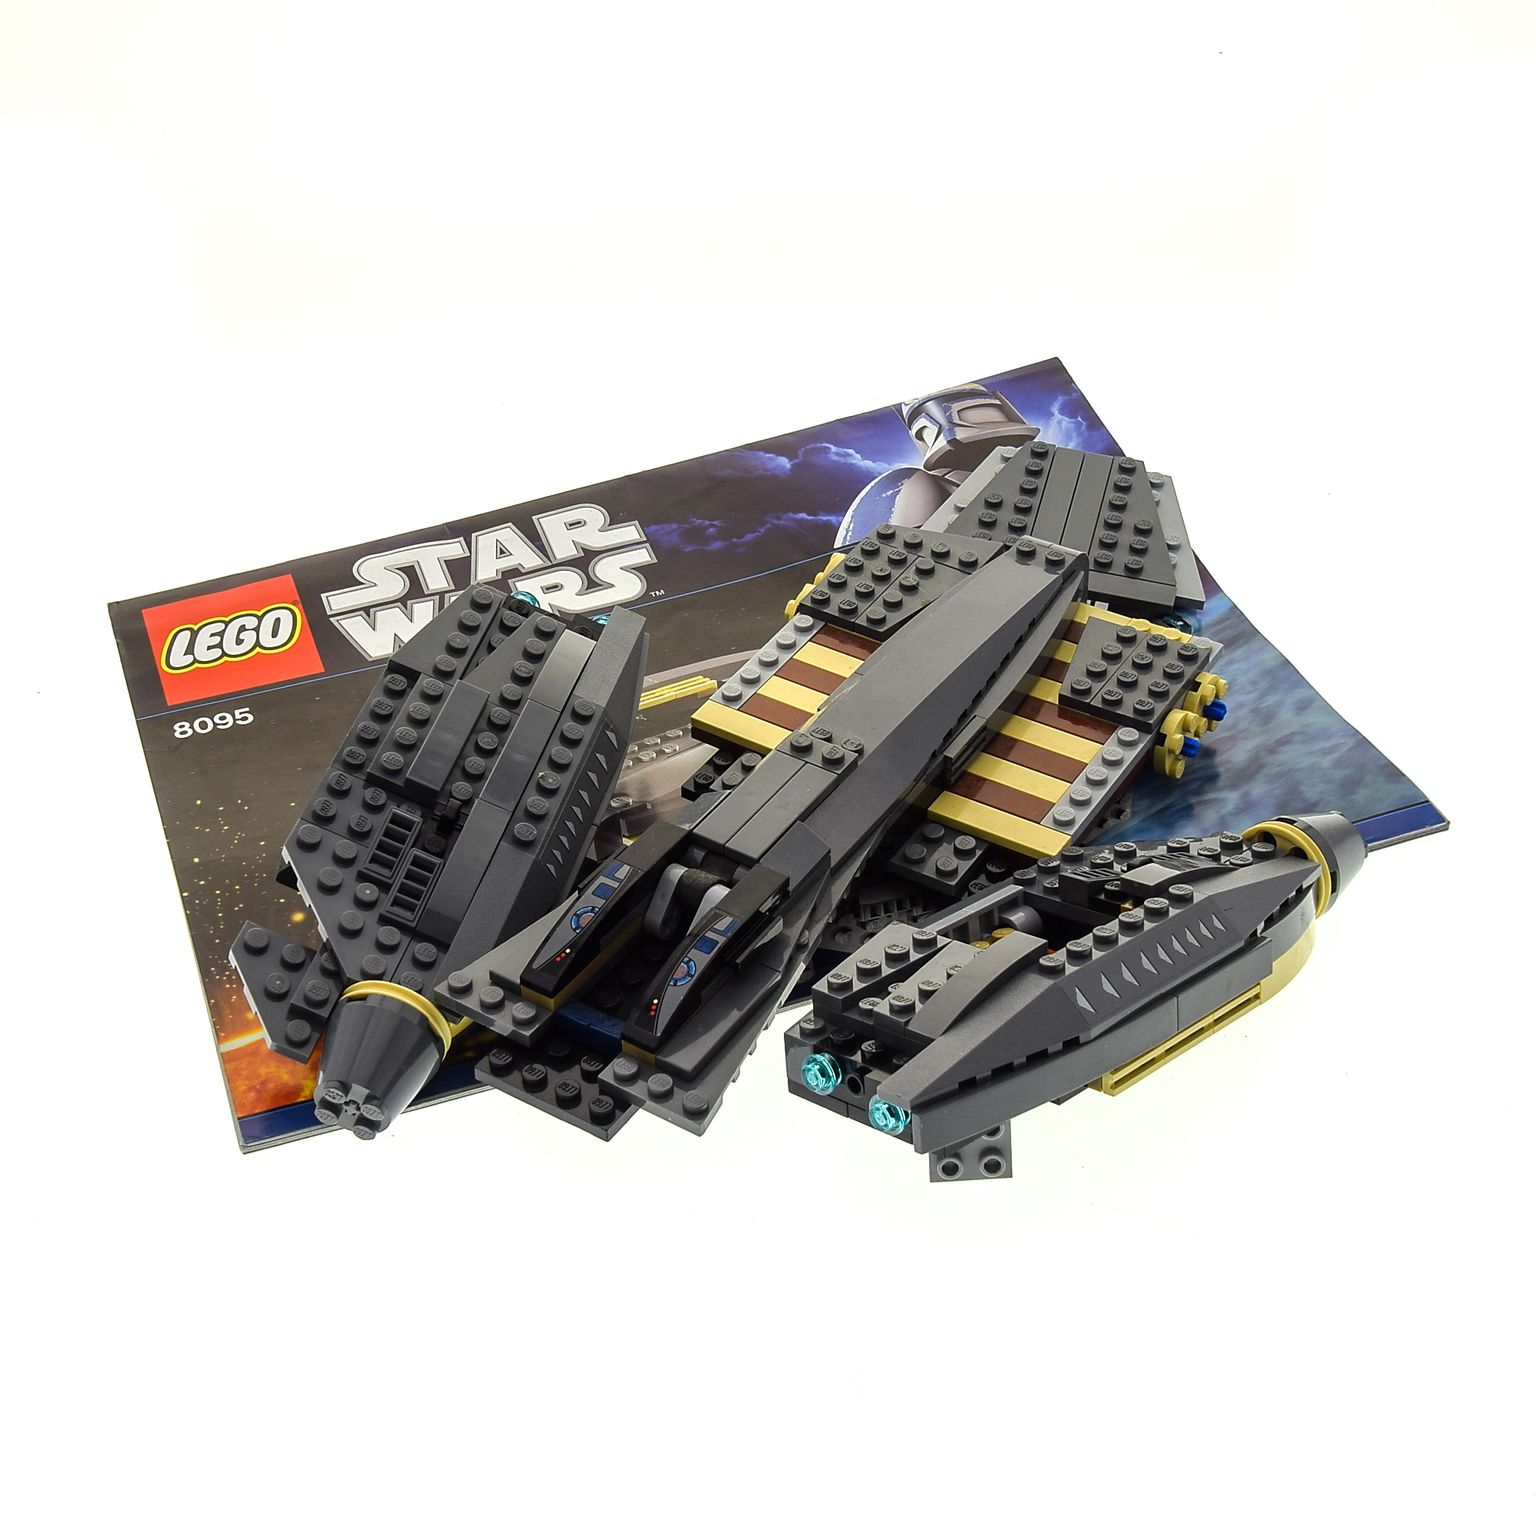 x Lego System Modell General Grievous' Starfighter 8095 Star Wars grau beige Raumschiff mit Bauanleitung incomplete unvollständig | Steinpalast EN